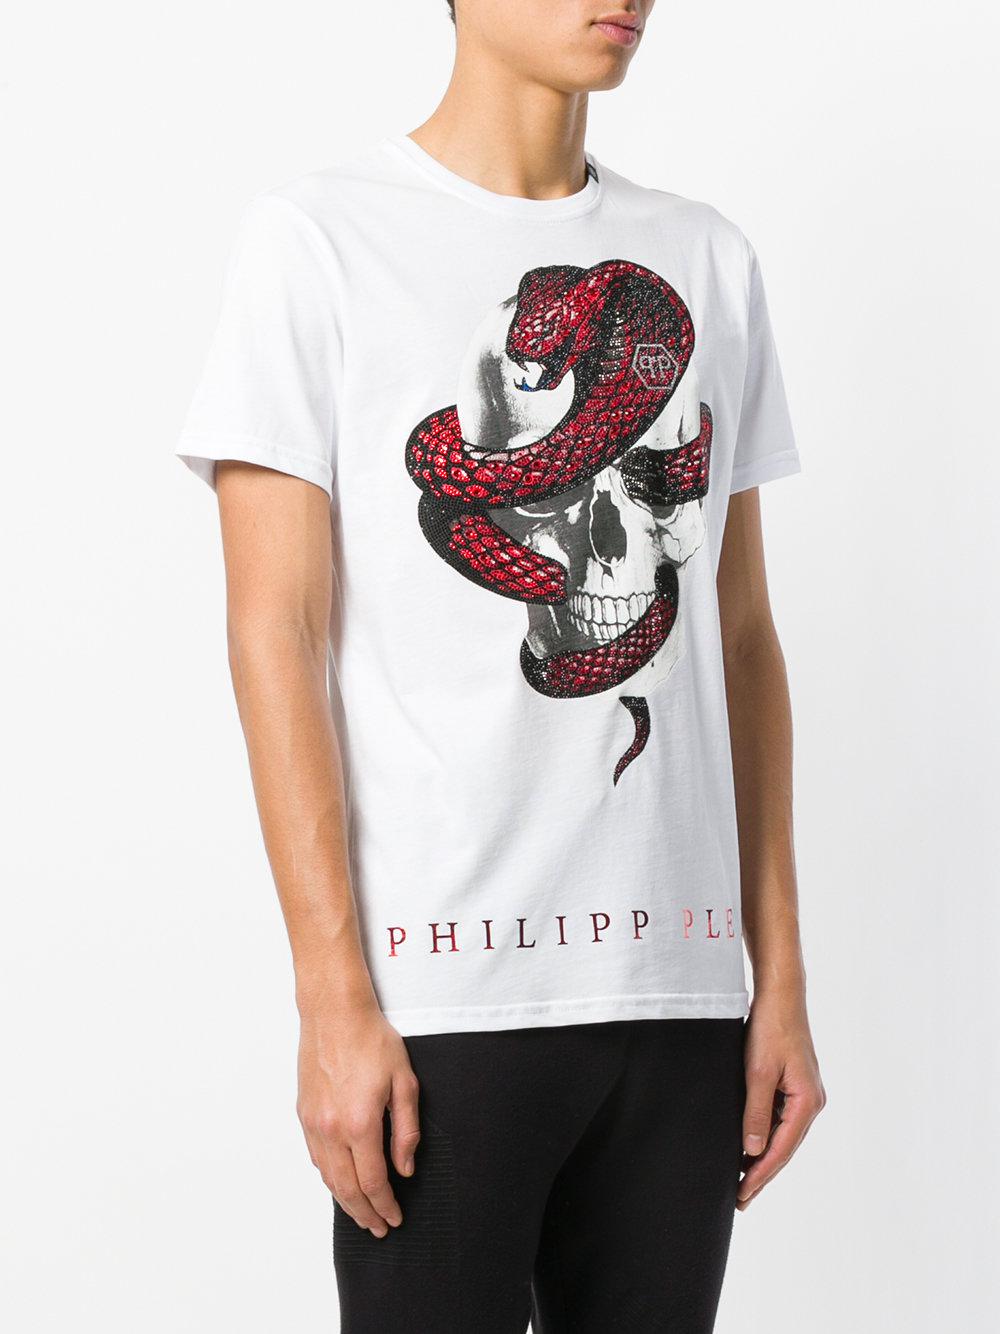 Philipp Plein Cotton Snake Skull Print T-shirt in White for Men - Lyst